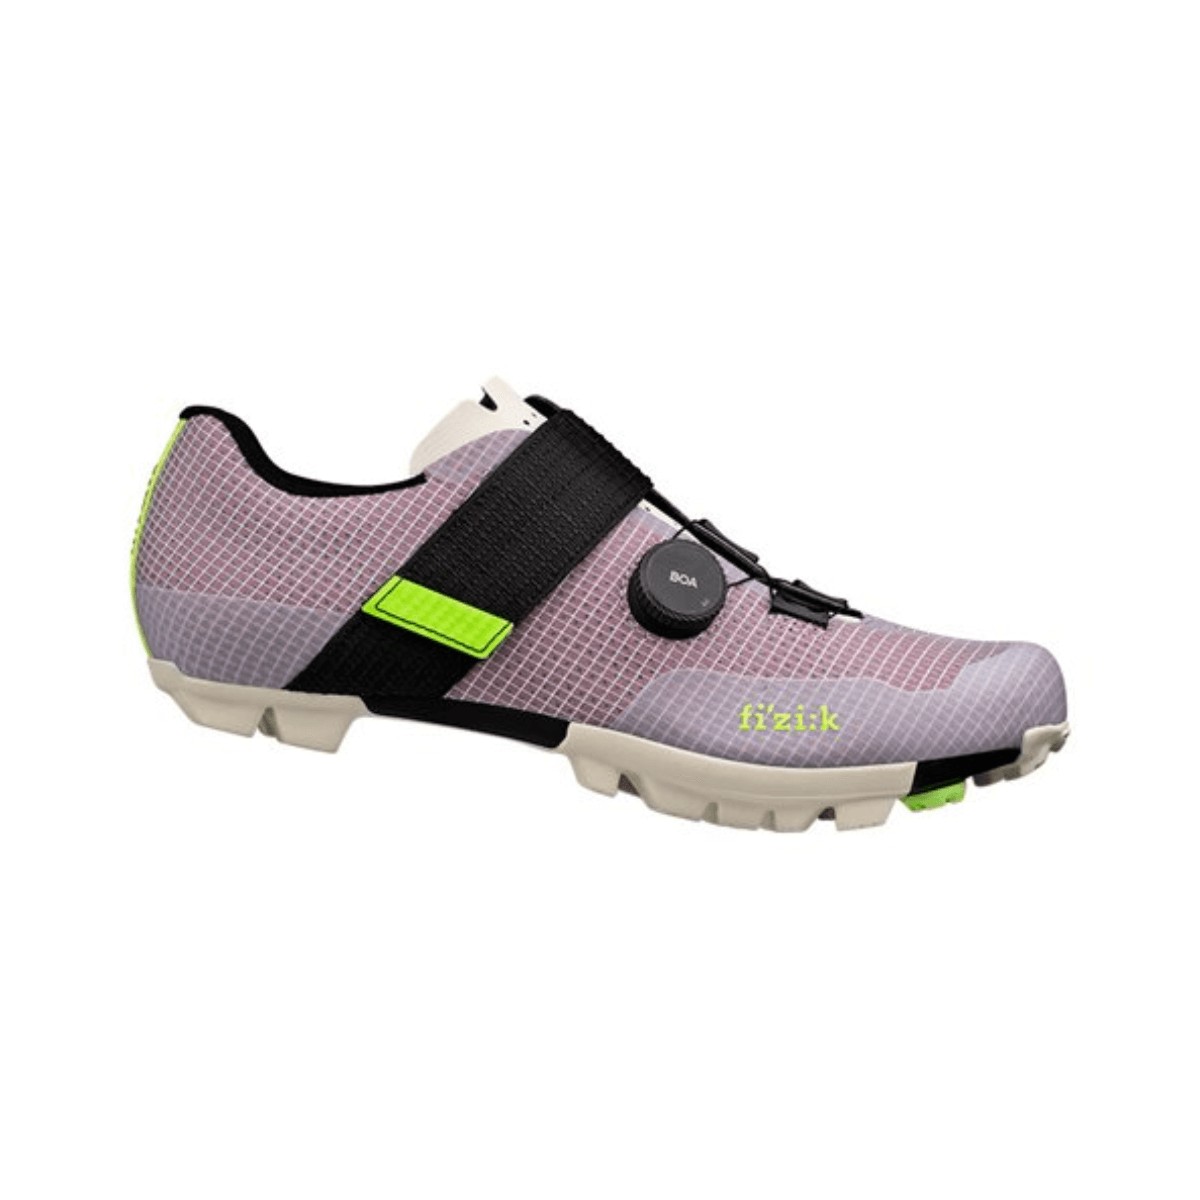 Shoes Fizik Vento Ferox Carbon Lilac White, Size 41 - EUR